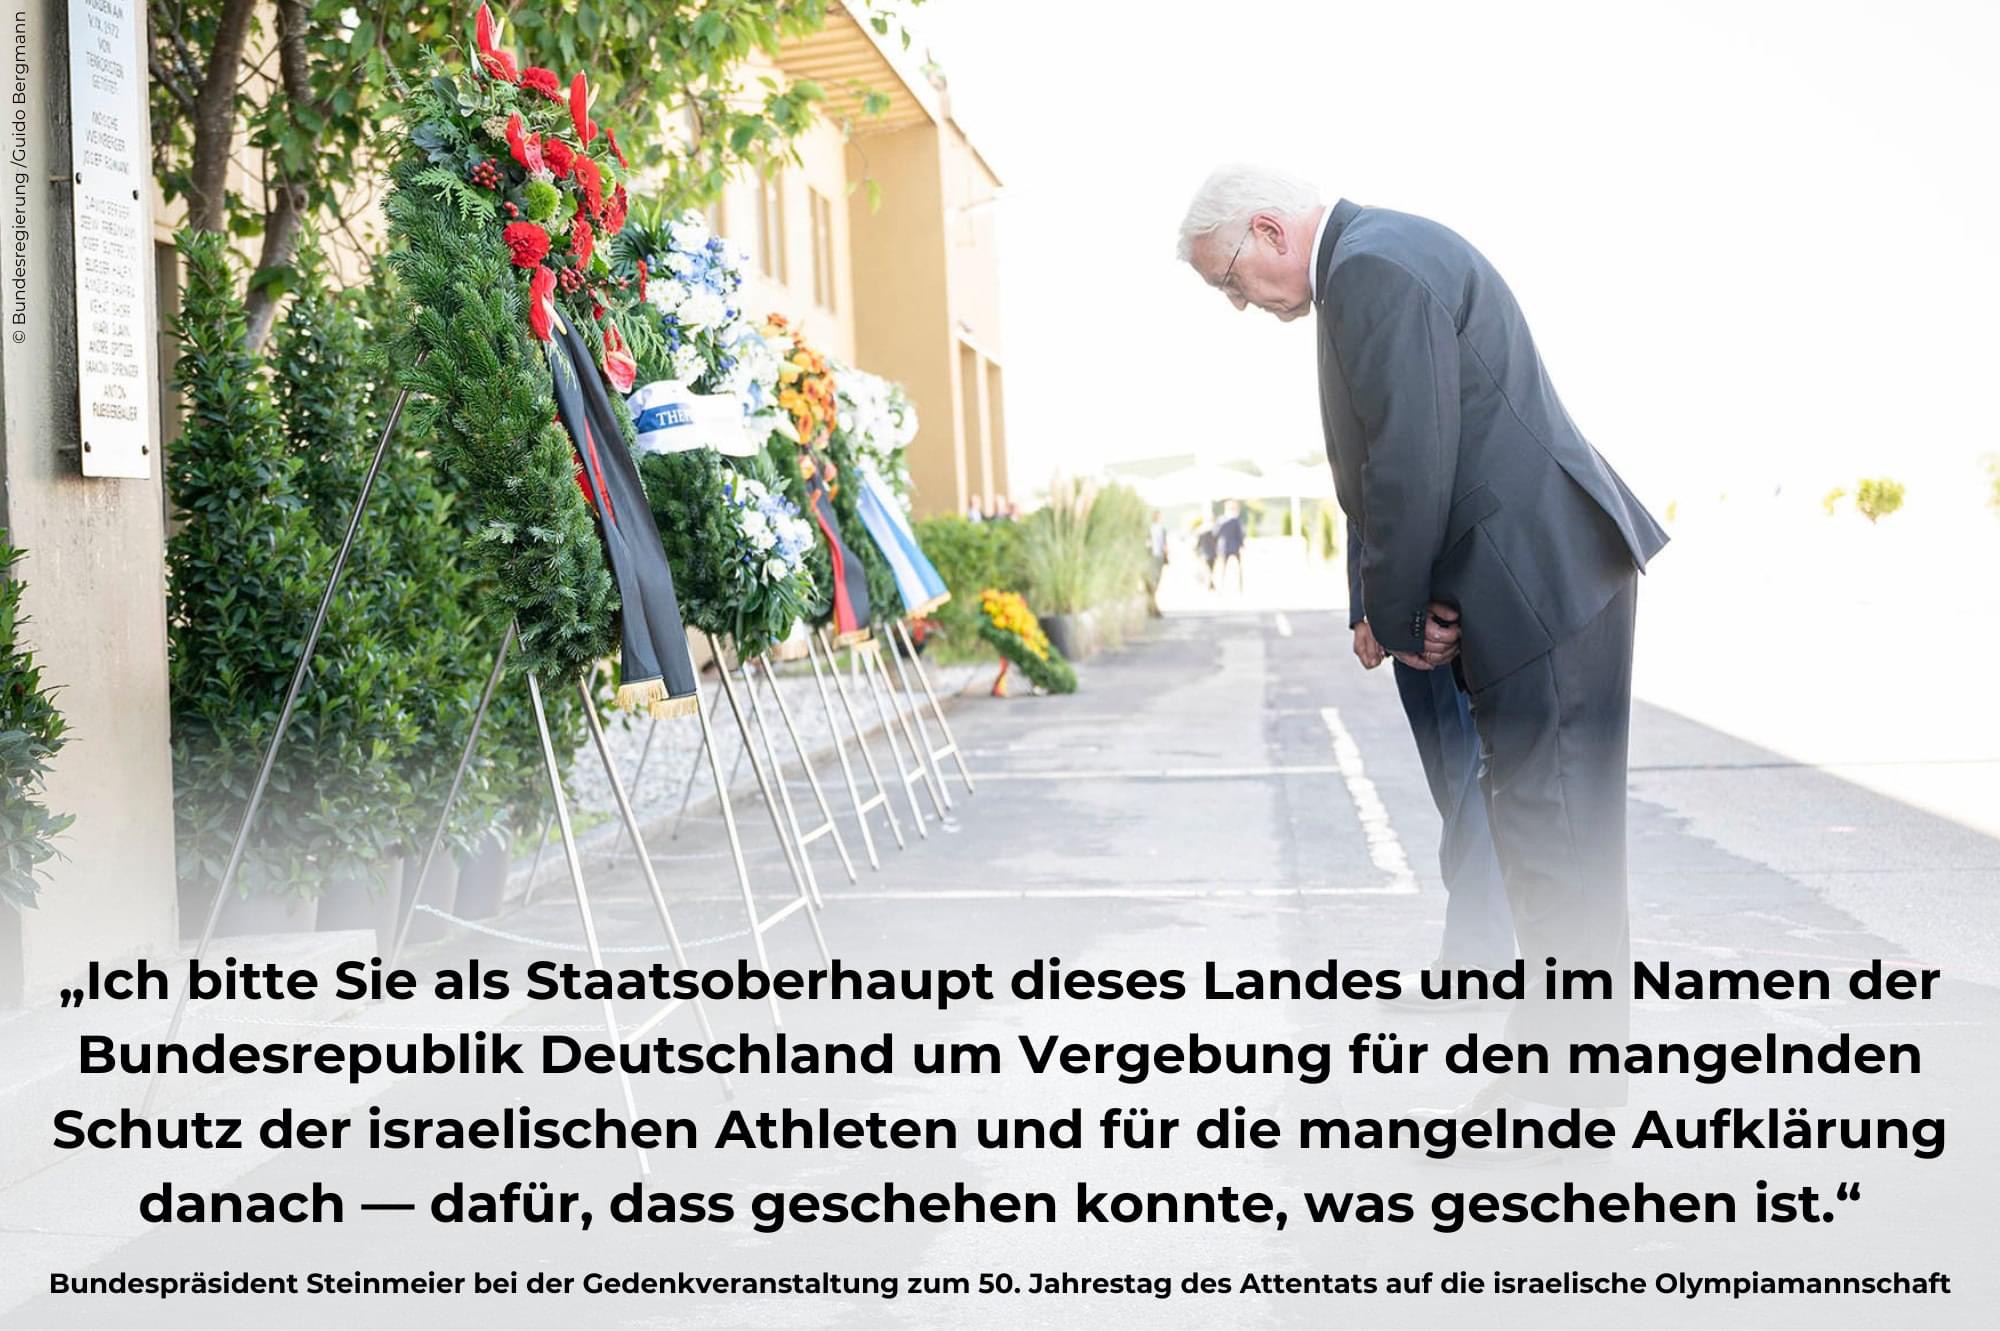 Bundespräsident Frank-Walter Steinmeier bei der Gedenkveranstaltung zum 50. Jahrestag des Attentats auf die israelische Olympiamannschaft am 5. September 2022 in Fürstenfeldbruck